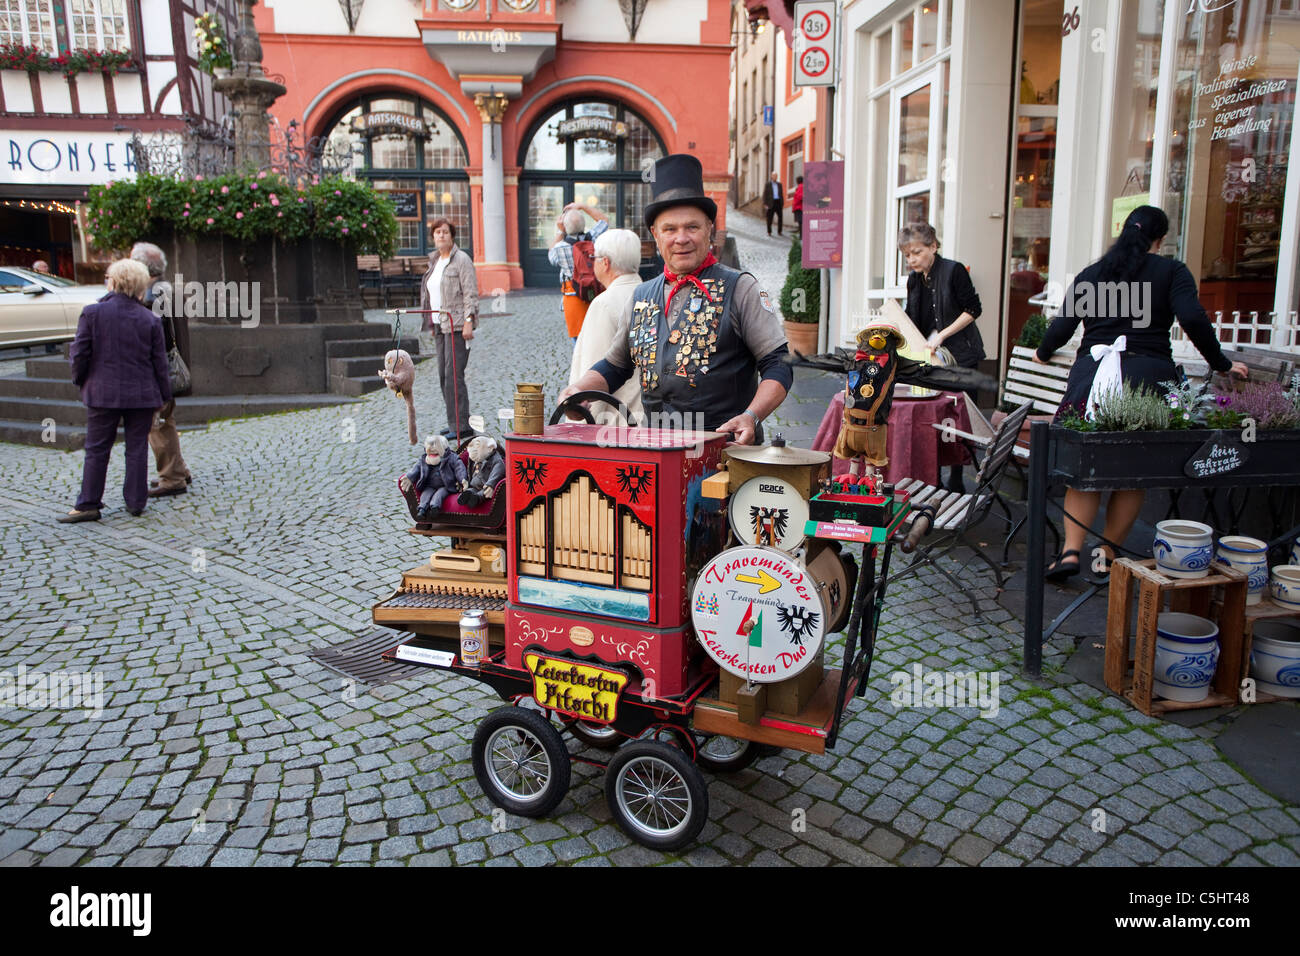 Joueur de hurdy-gurdy, orgue de canon, musacien de rue, place du marché, place du marché, Vieille ville, Bernkastel-Kues, rivière Mosel, Rhénanie-Palatinat, Allemagne Banque D'Images